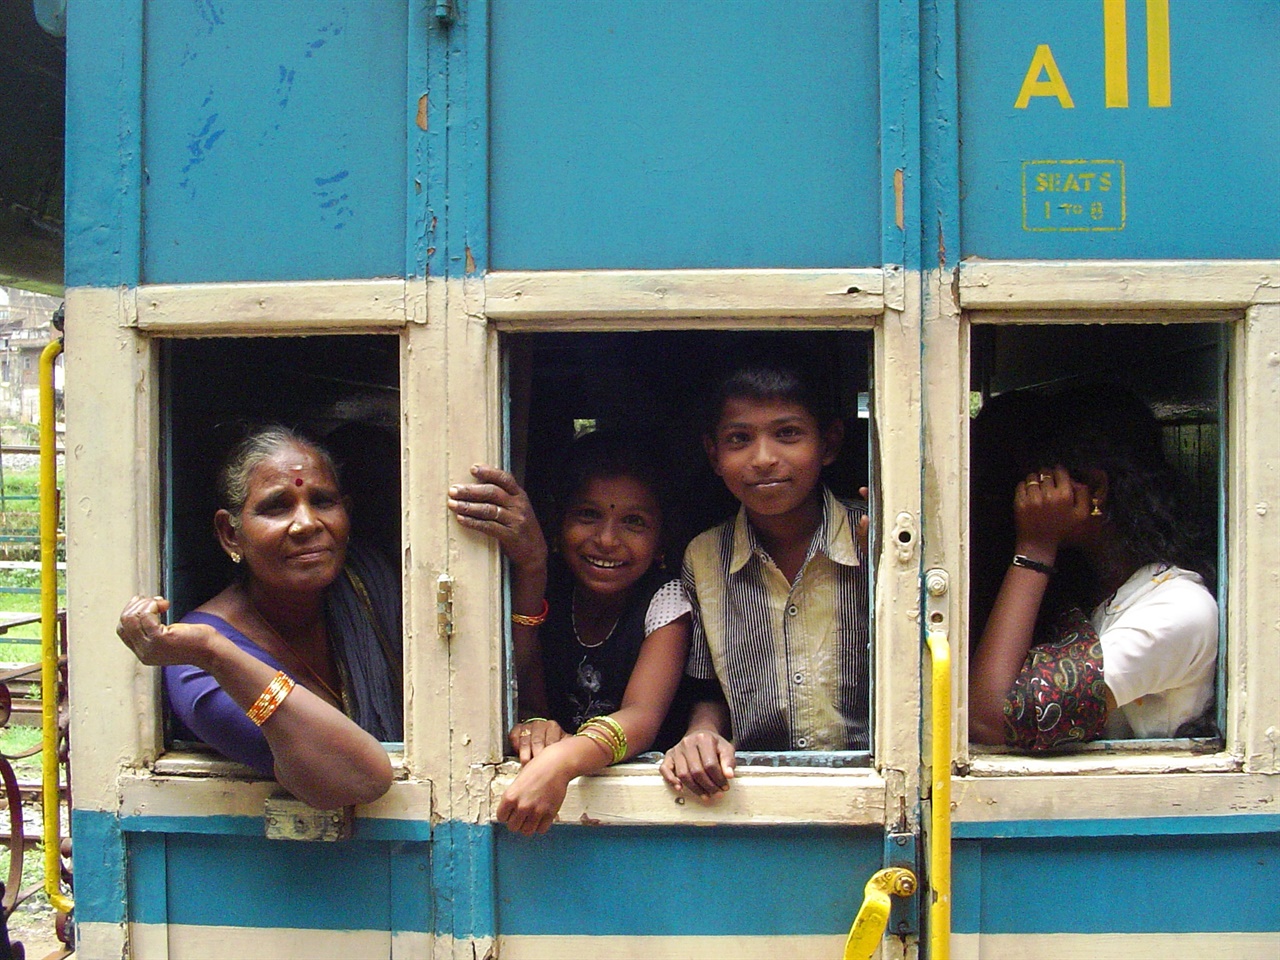 가난 속에서도 언제나 웃는 얼굴인 인도 아이들. 그들도 ‘다음 생’이 있다는 걸 믿고 있을까?